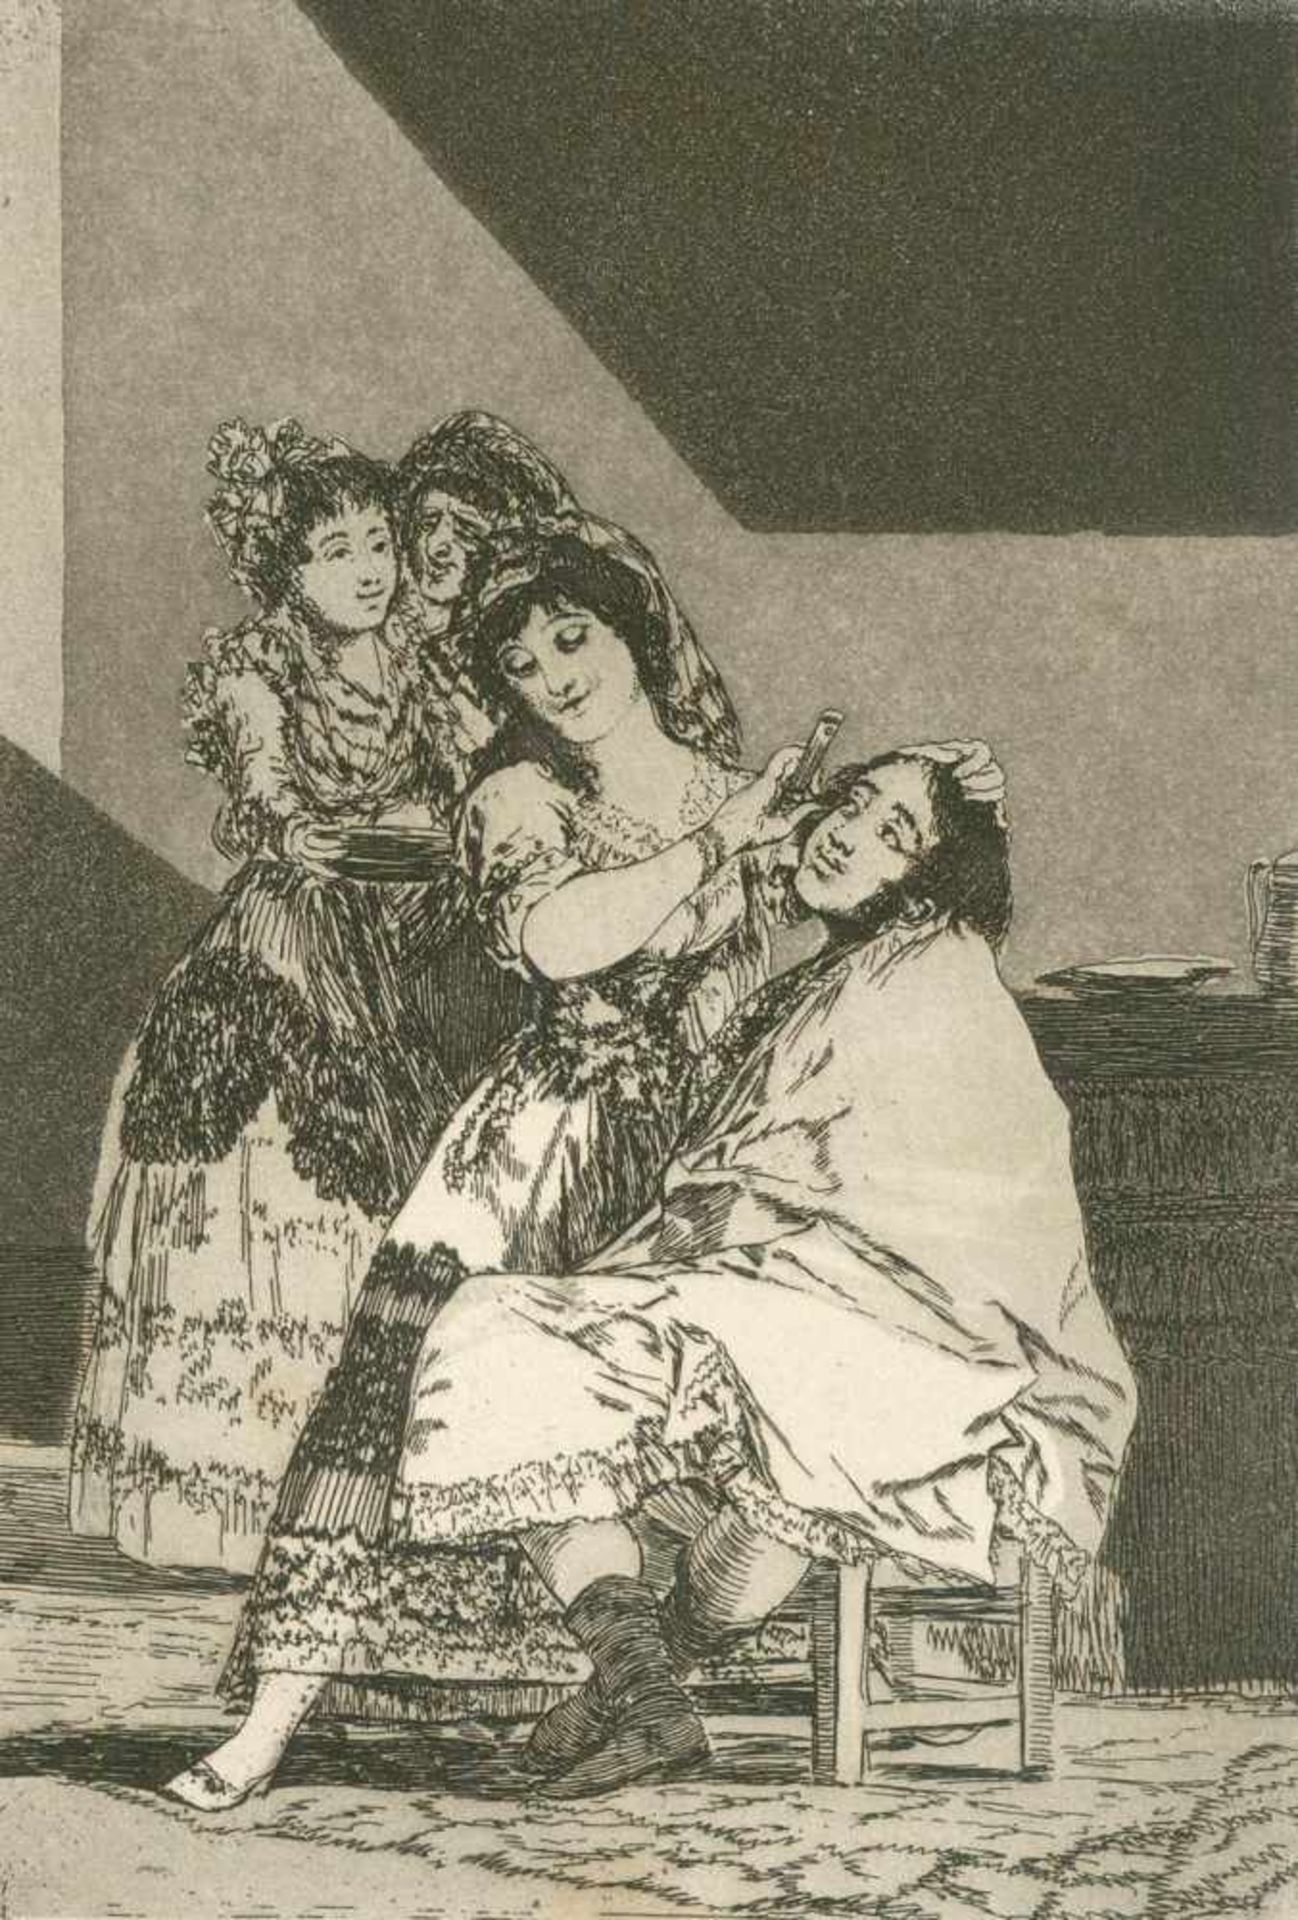 Goya, Francisco de(1746 Fuendetodos - Bordeaux 1828). Los Caprichos. 80 Radierungen mit Aquatinta in - Bild 7 aus 10